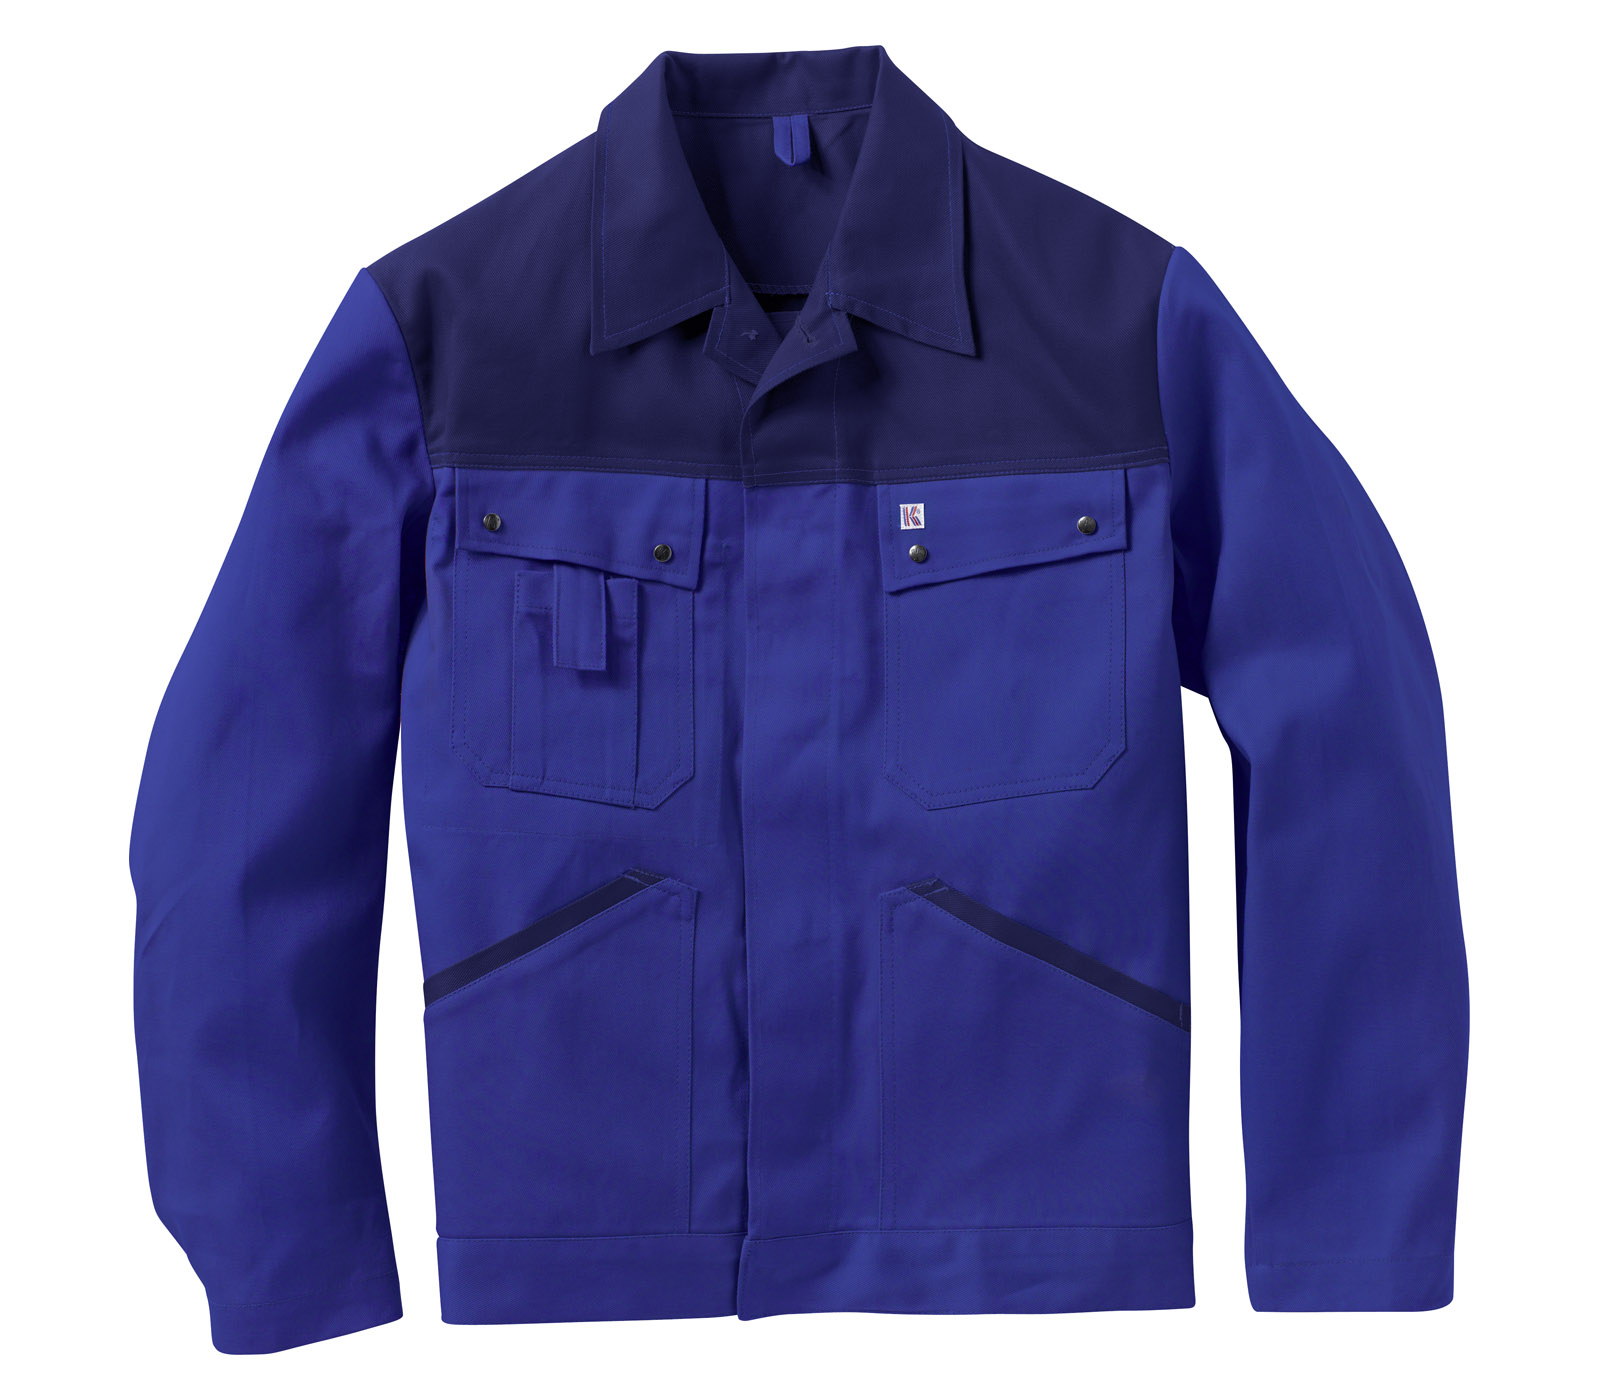 KÜBLER Bundjacke Arbeitsjacke Berufsjacke Schutzjacke Arbeitskleidung Berufskleidung kornblau marine